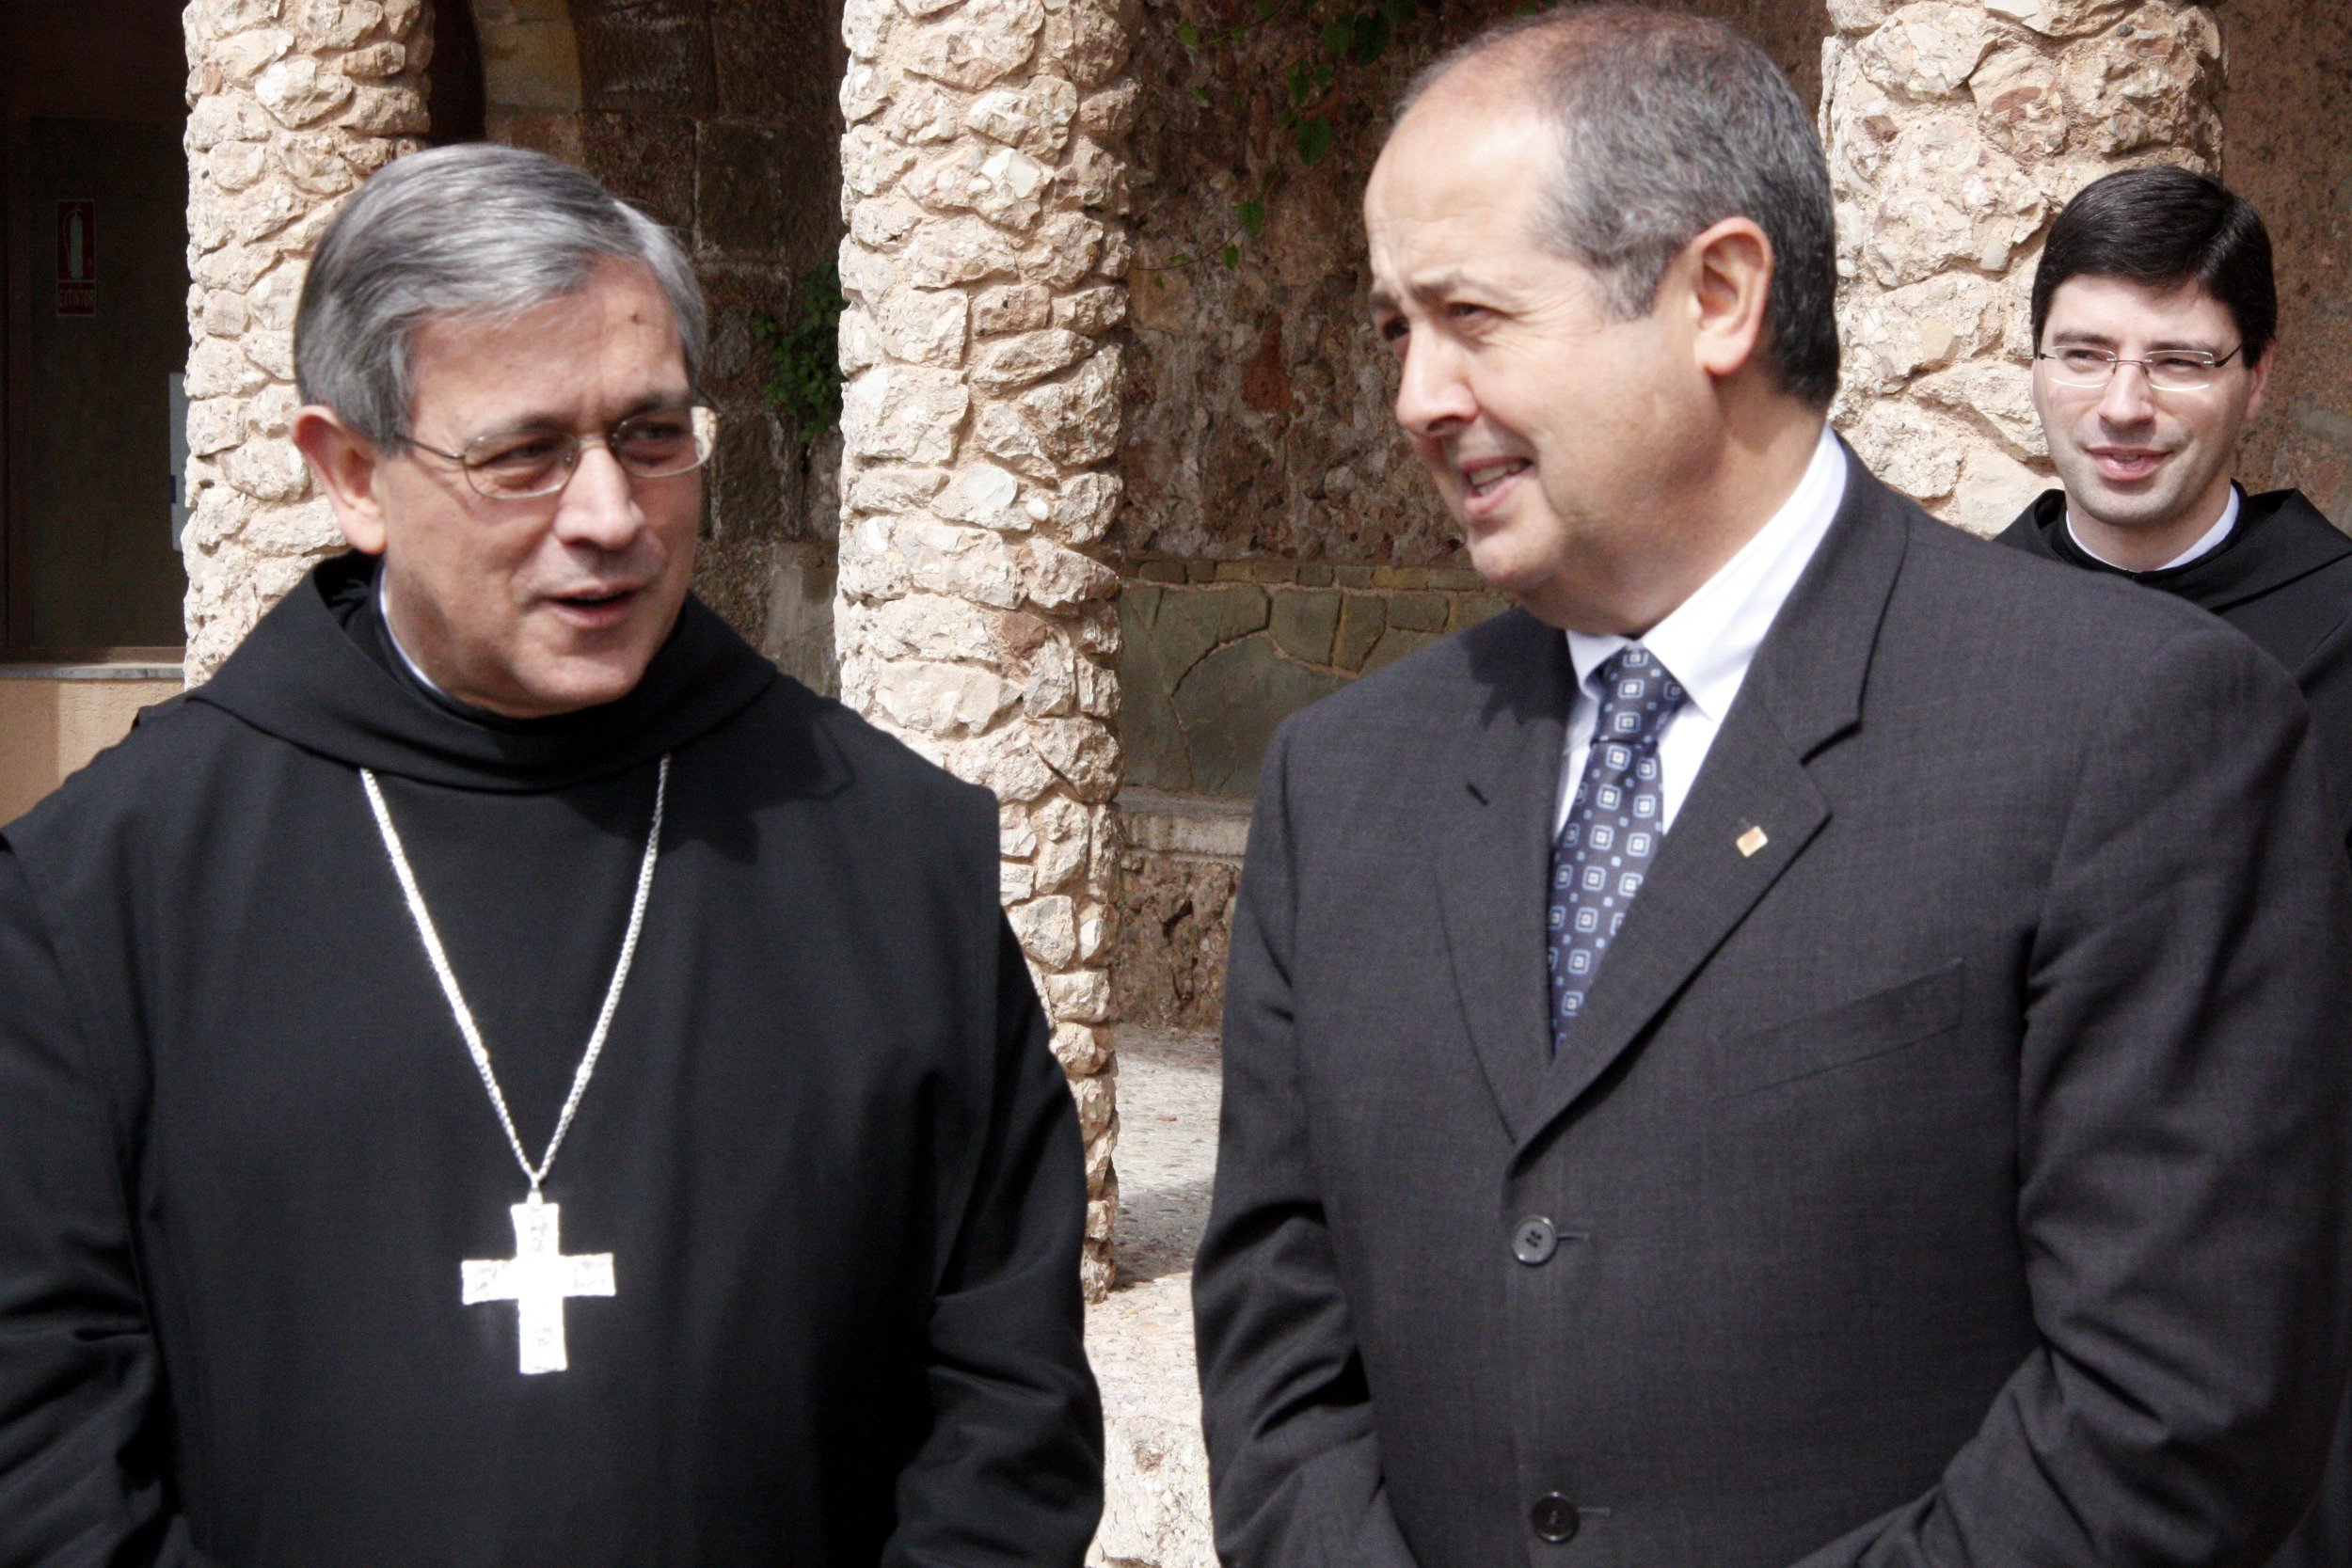 L'abat de Montserrat: "Els empresonaments preventius creen una inquietud notable"